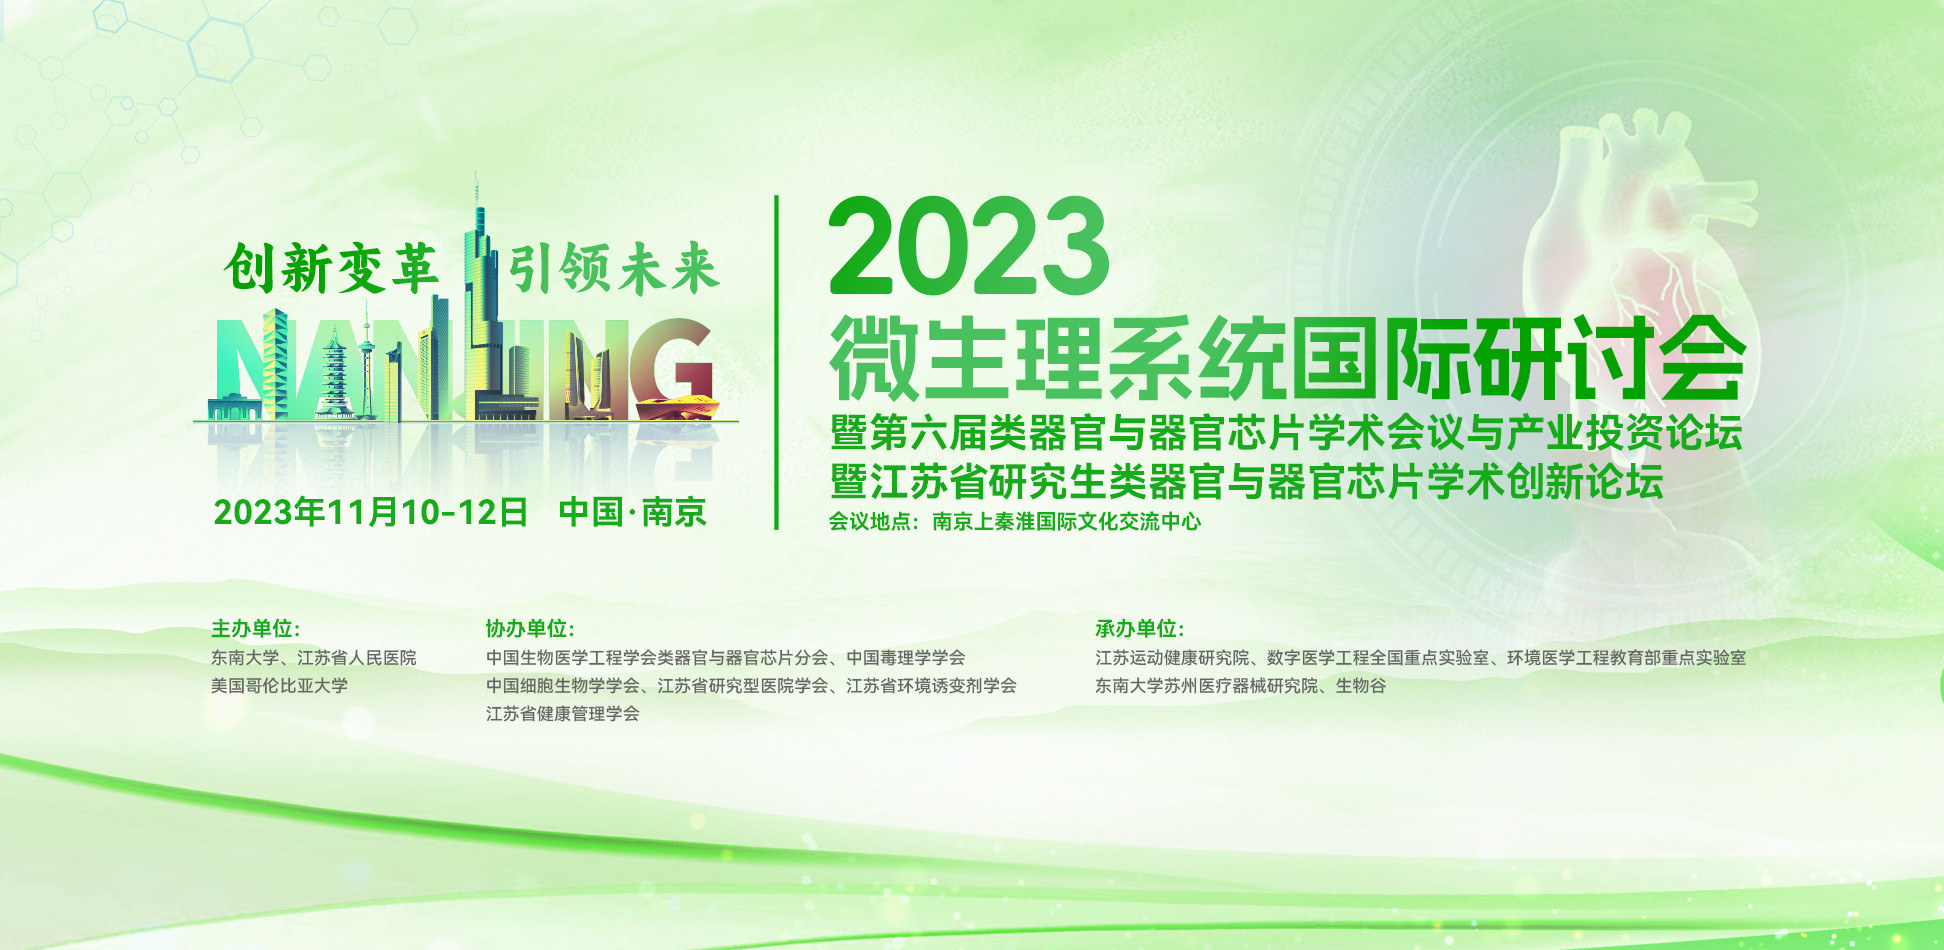 2023微生理系统国际研讨会